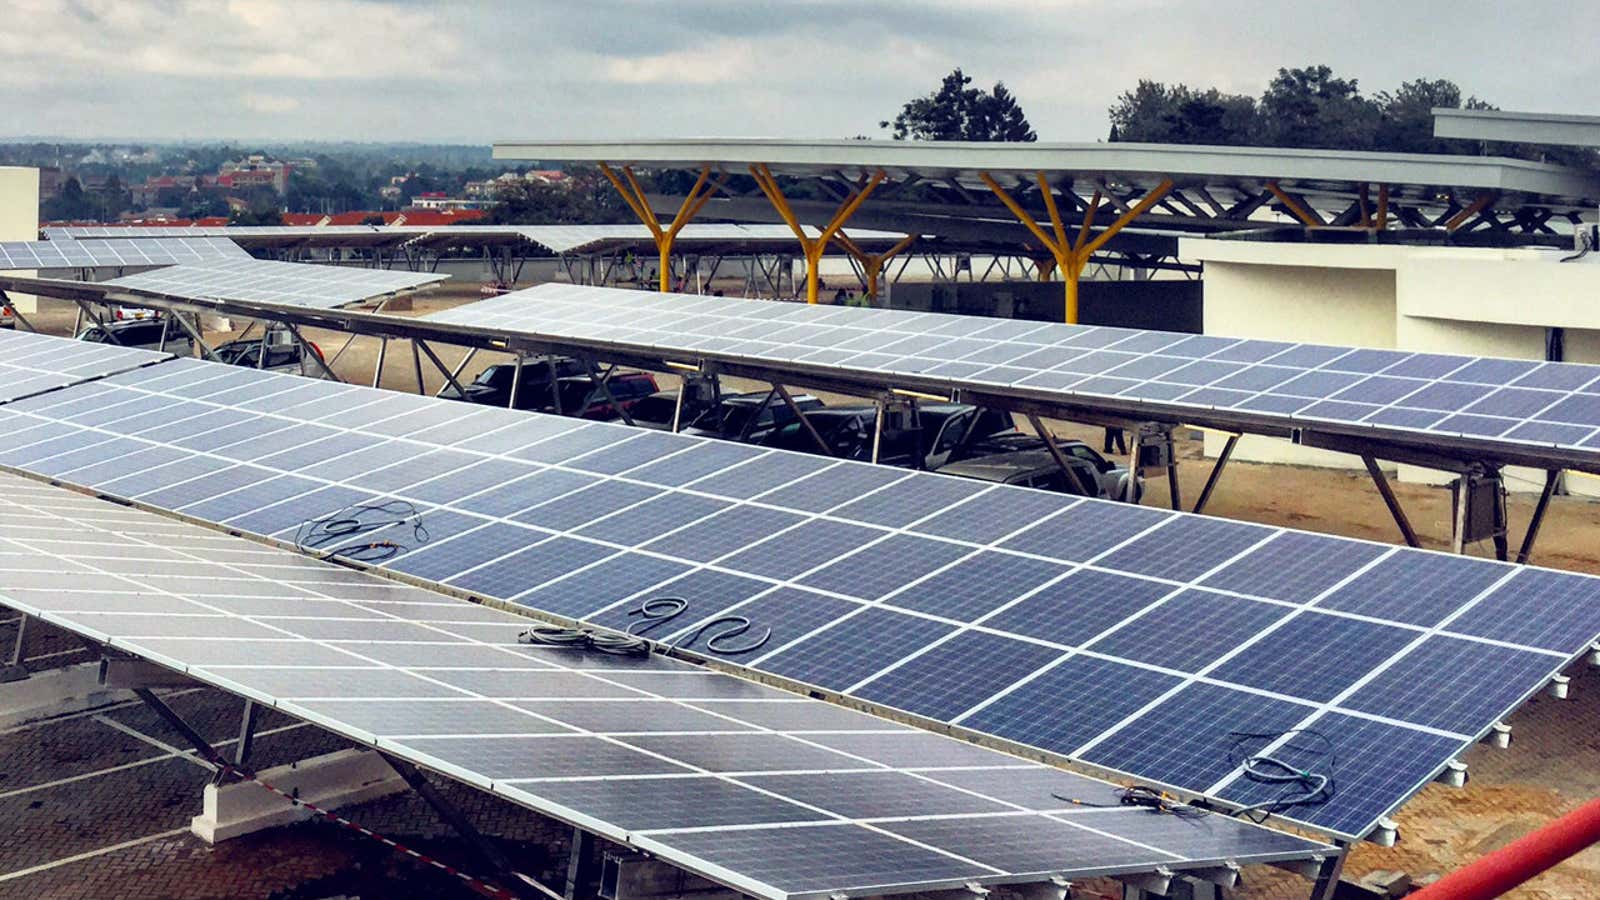 Solar4Africa installation under construction in Nairobi, Kenya